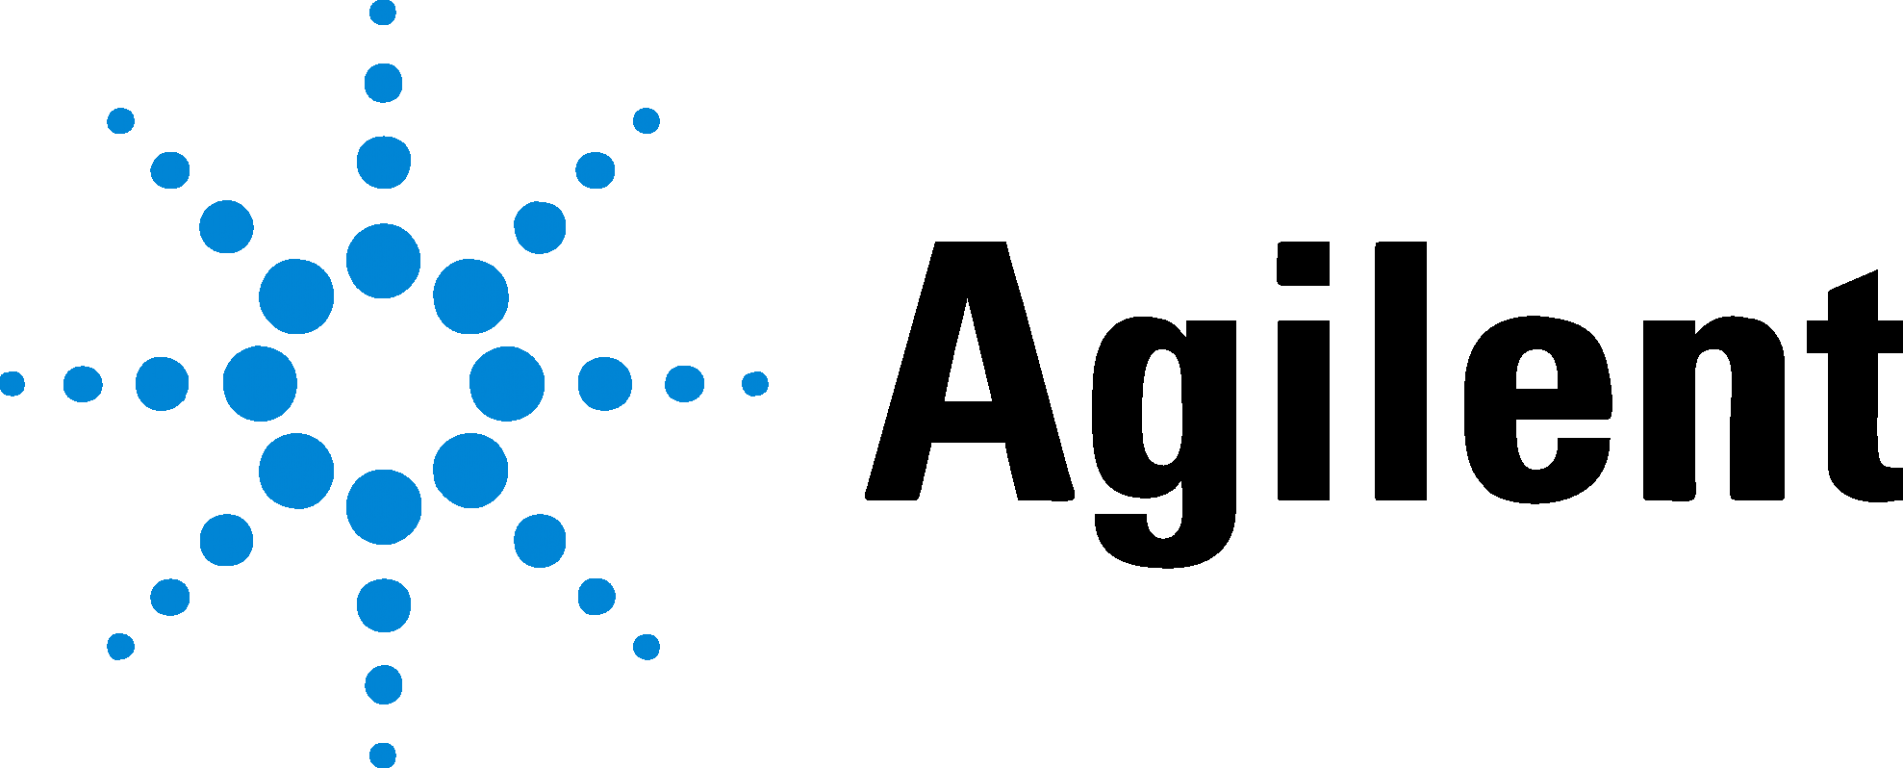 10 мкл наконечники без фильтра Gluvex в штативе, стерильные, апирогенные, не содержат ДНКазы и РНКазы, 96×50 шт./уп.